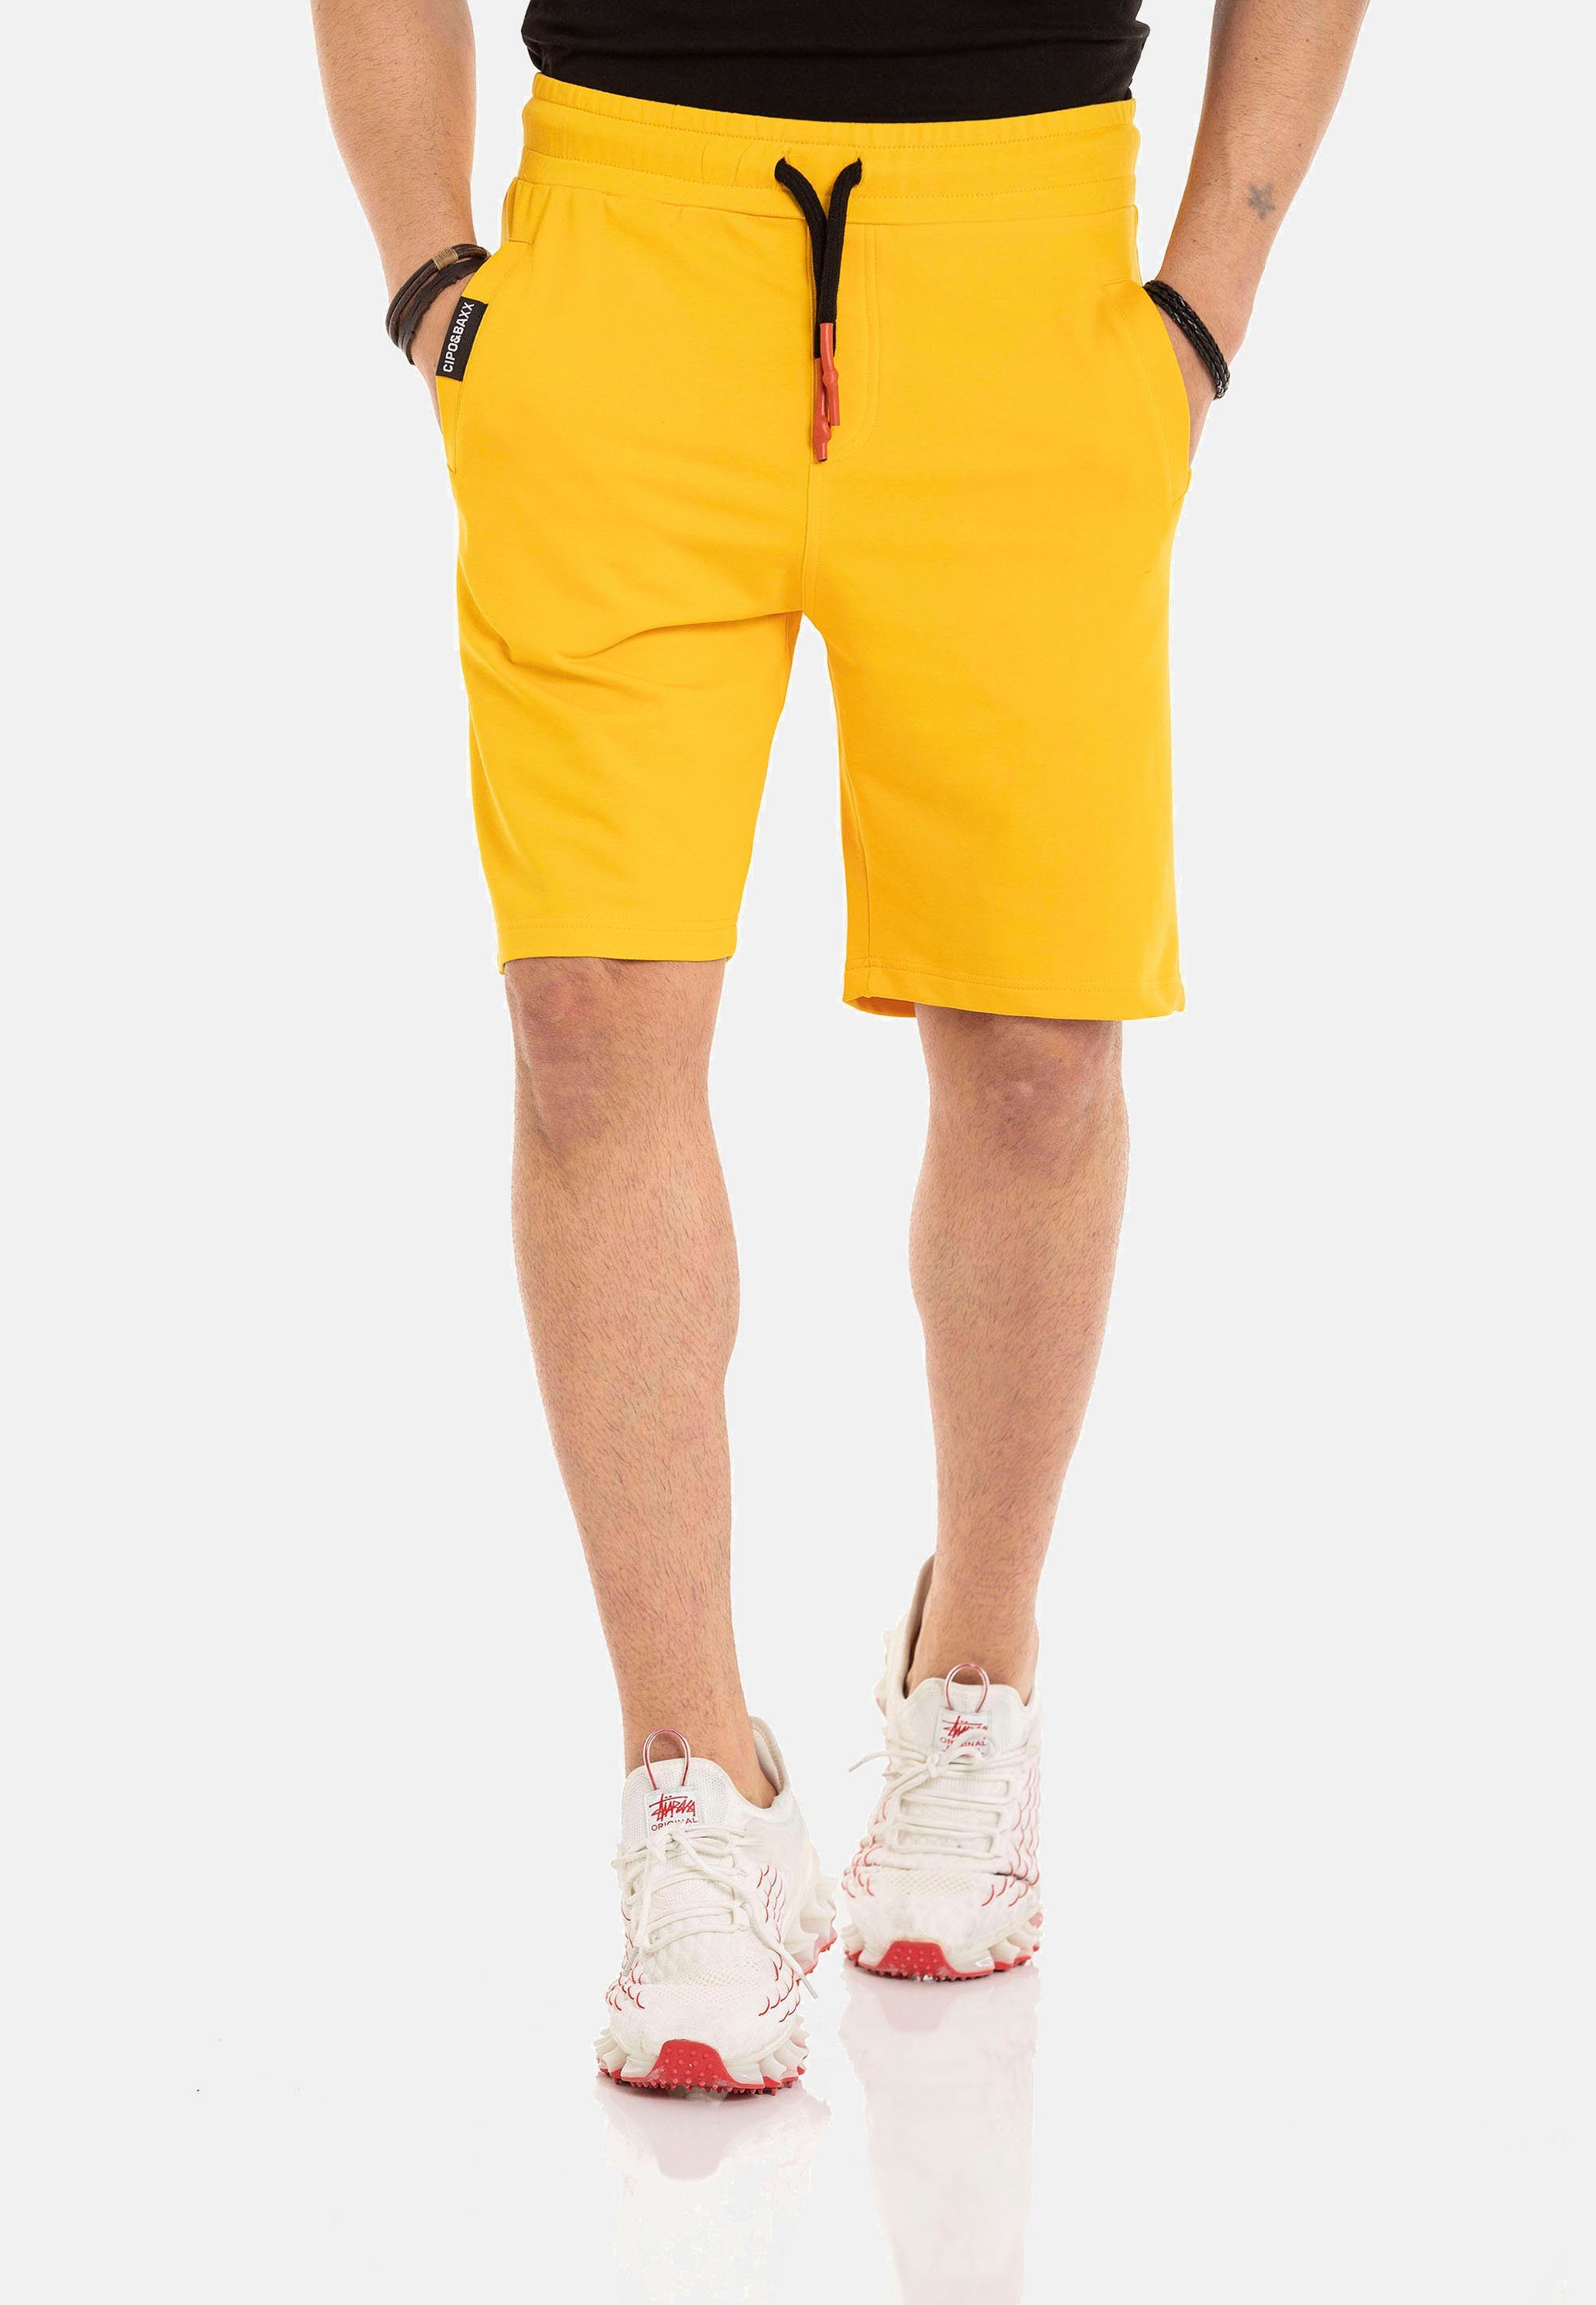 [Normaler Versandhandel im Laden] in & Look sportlichem Baxx Cipo Shorts gelb